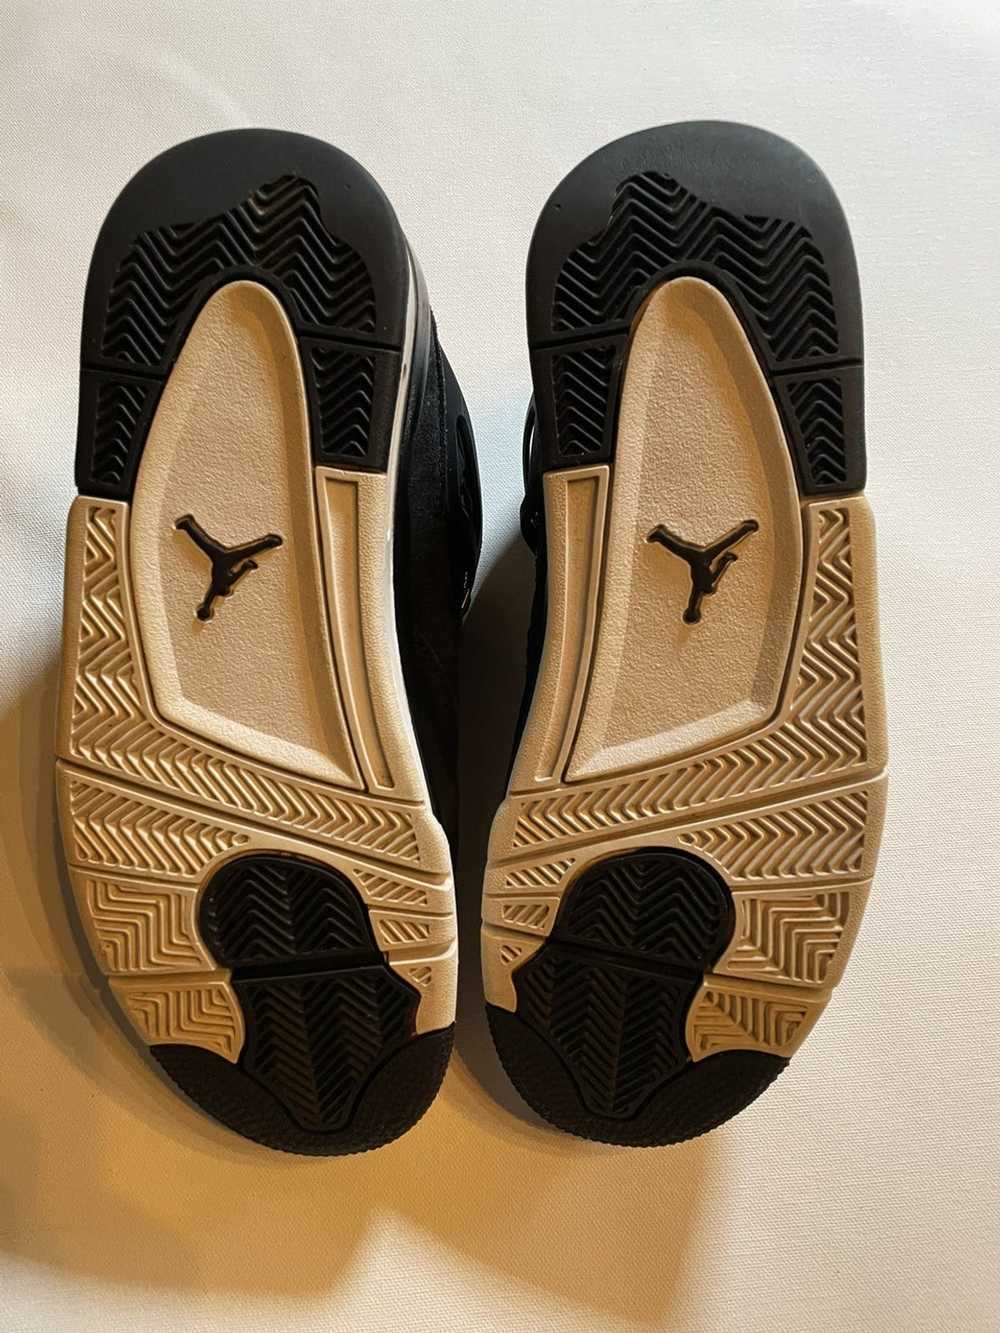 Jordan Brand × Nike Jordan 4 retro royalty - image 6